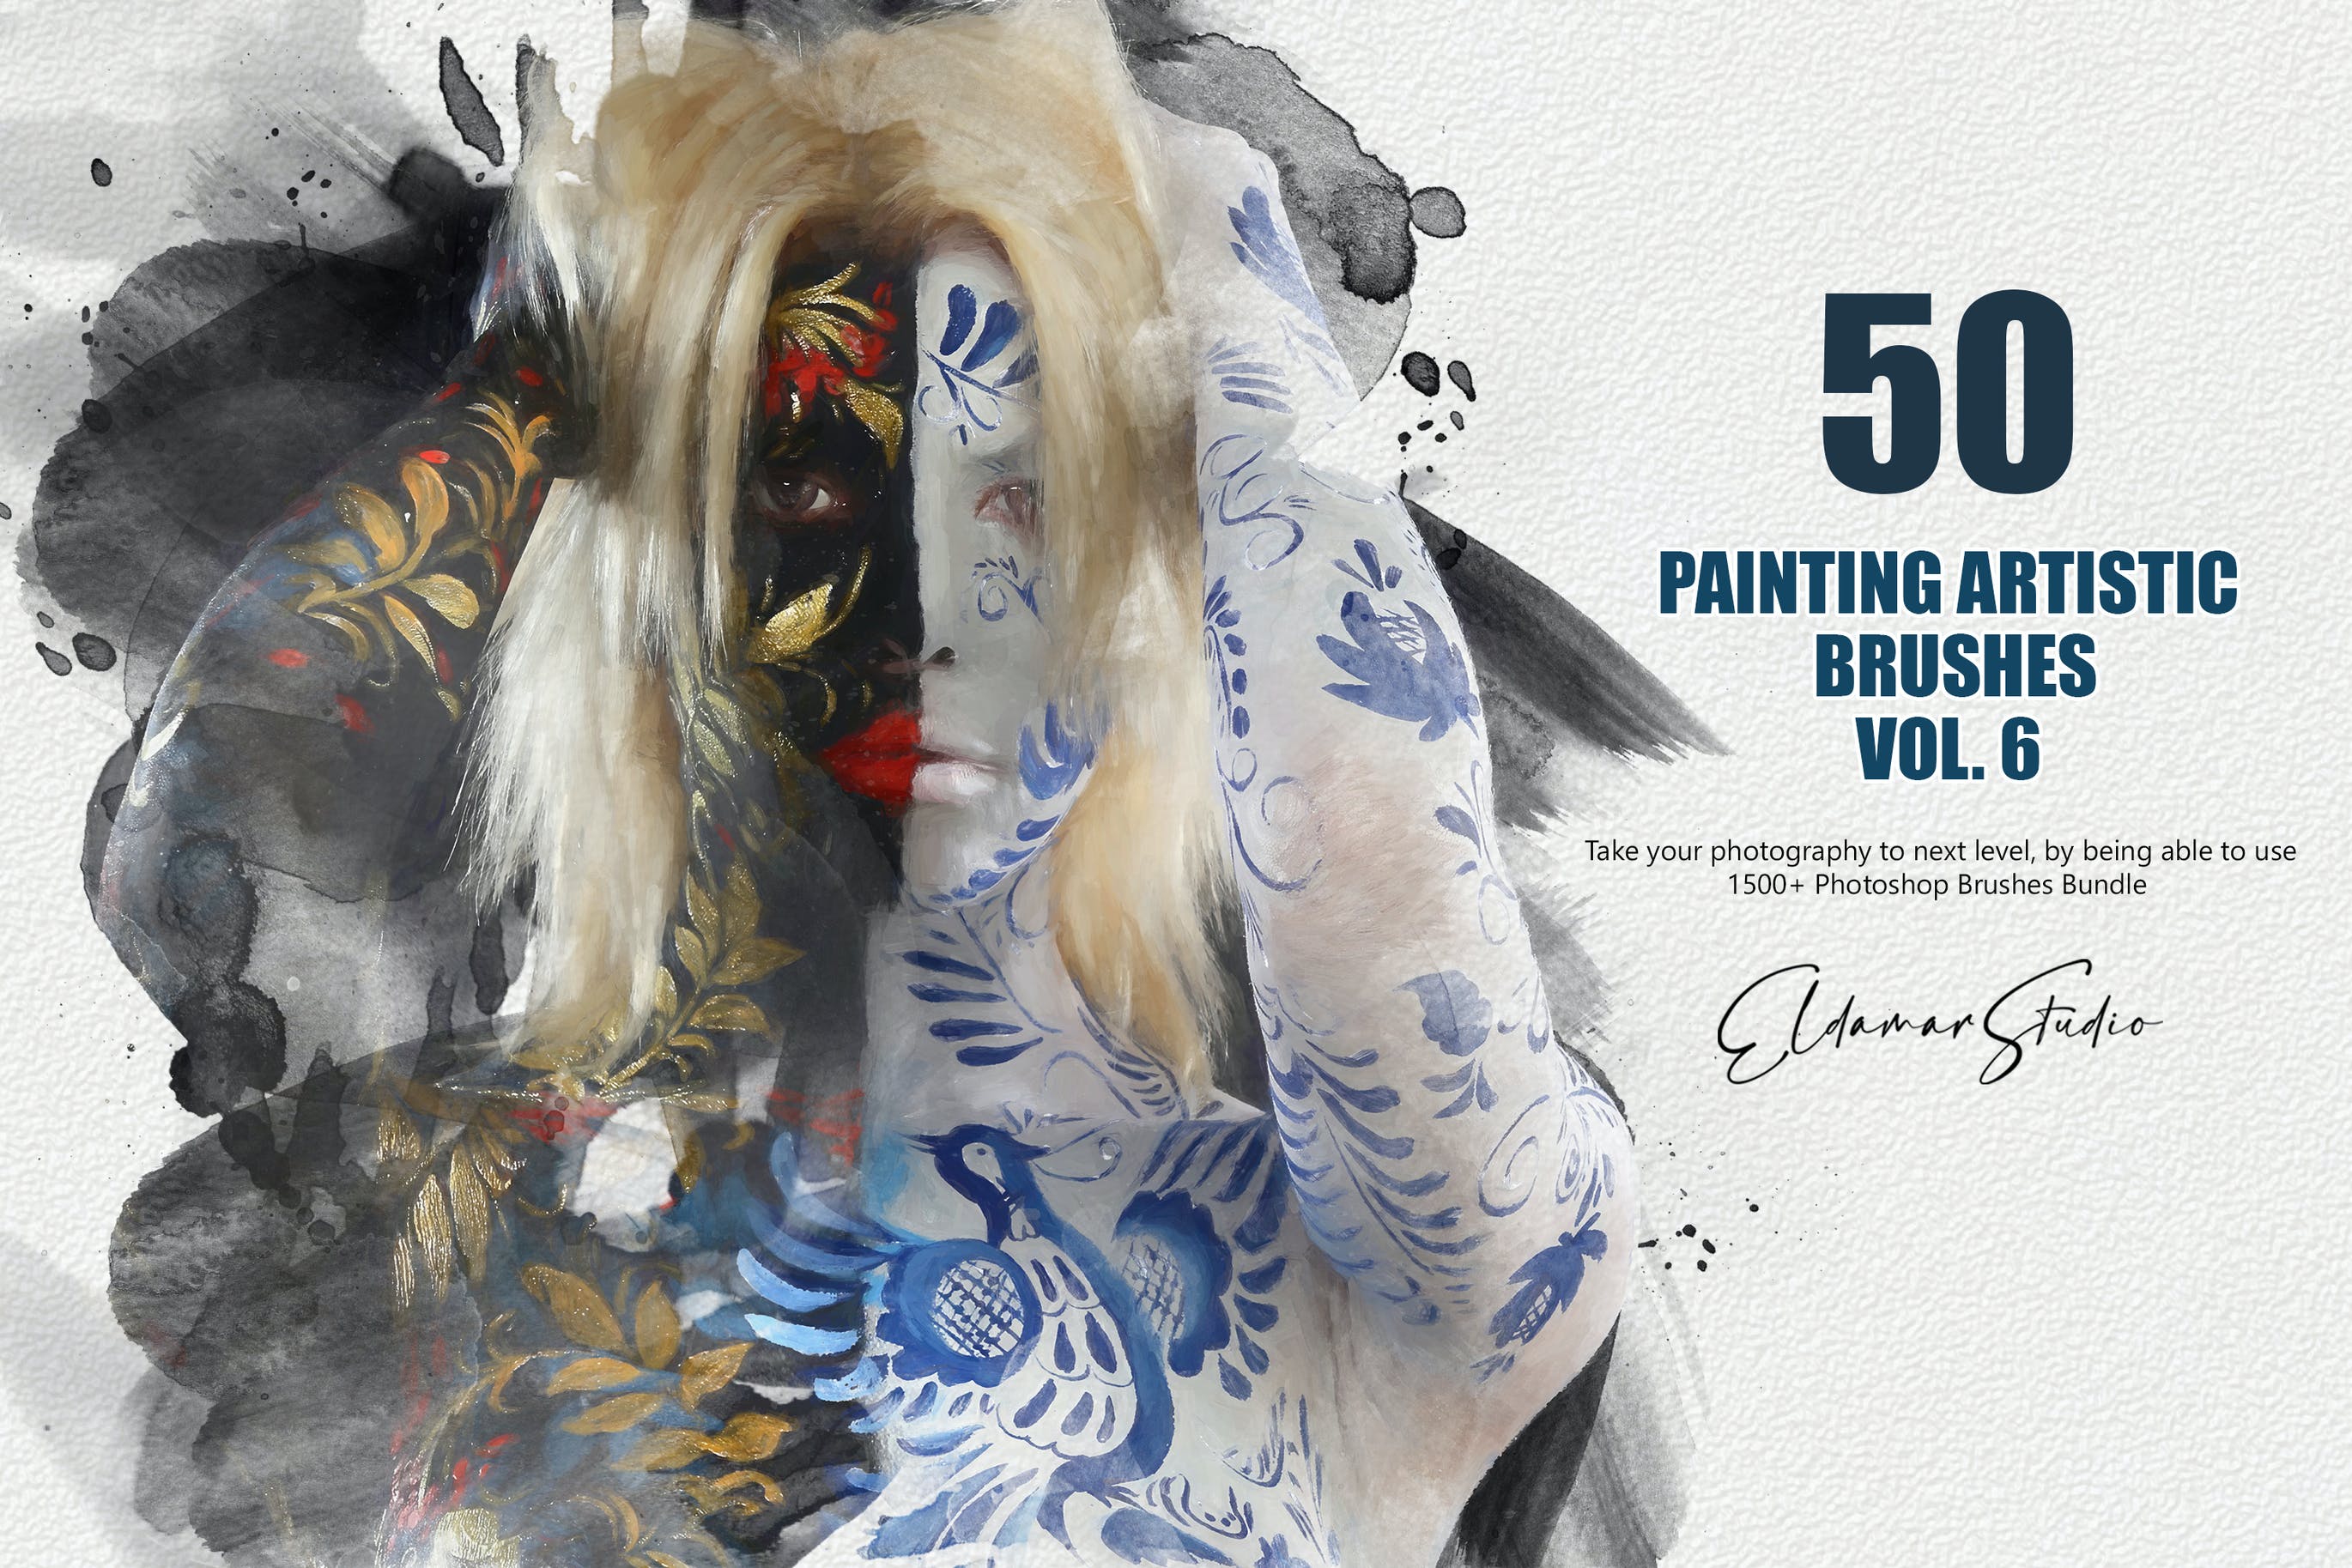 50个水彩艺术绘画笔刷素材v6 50 Painting Artistic Brushes – Vol. 6 笔刷资源 第1张